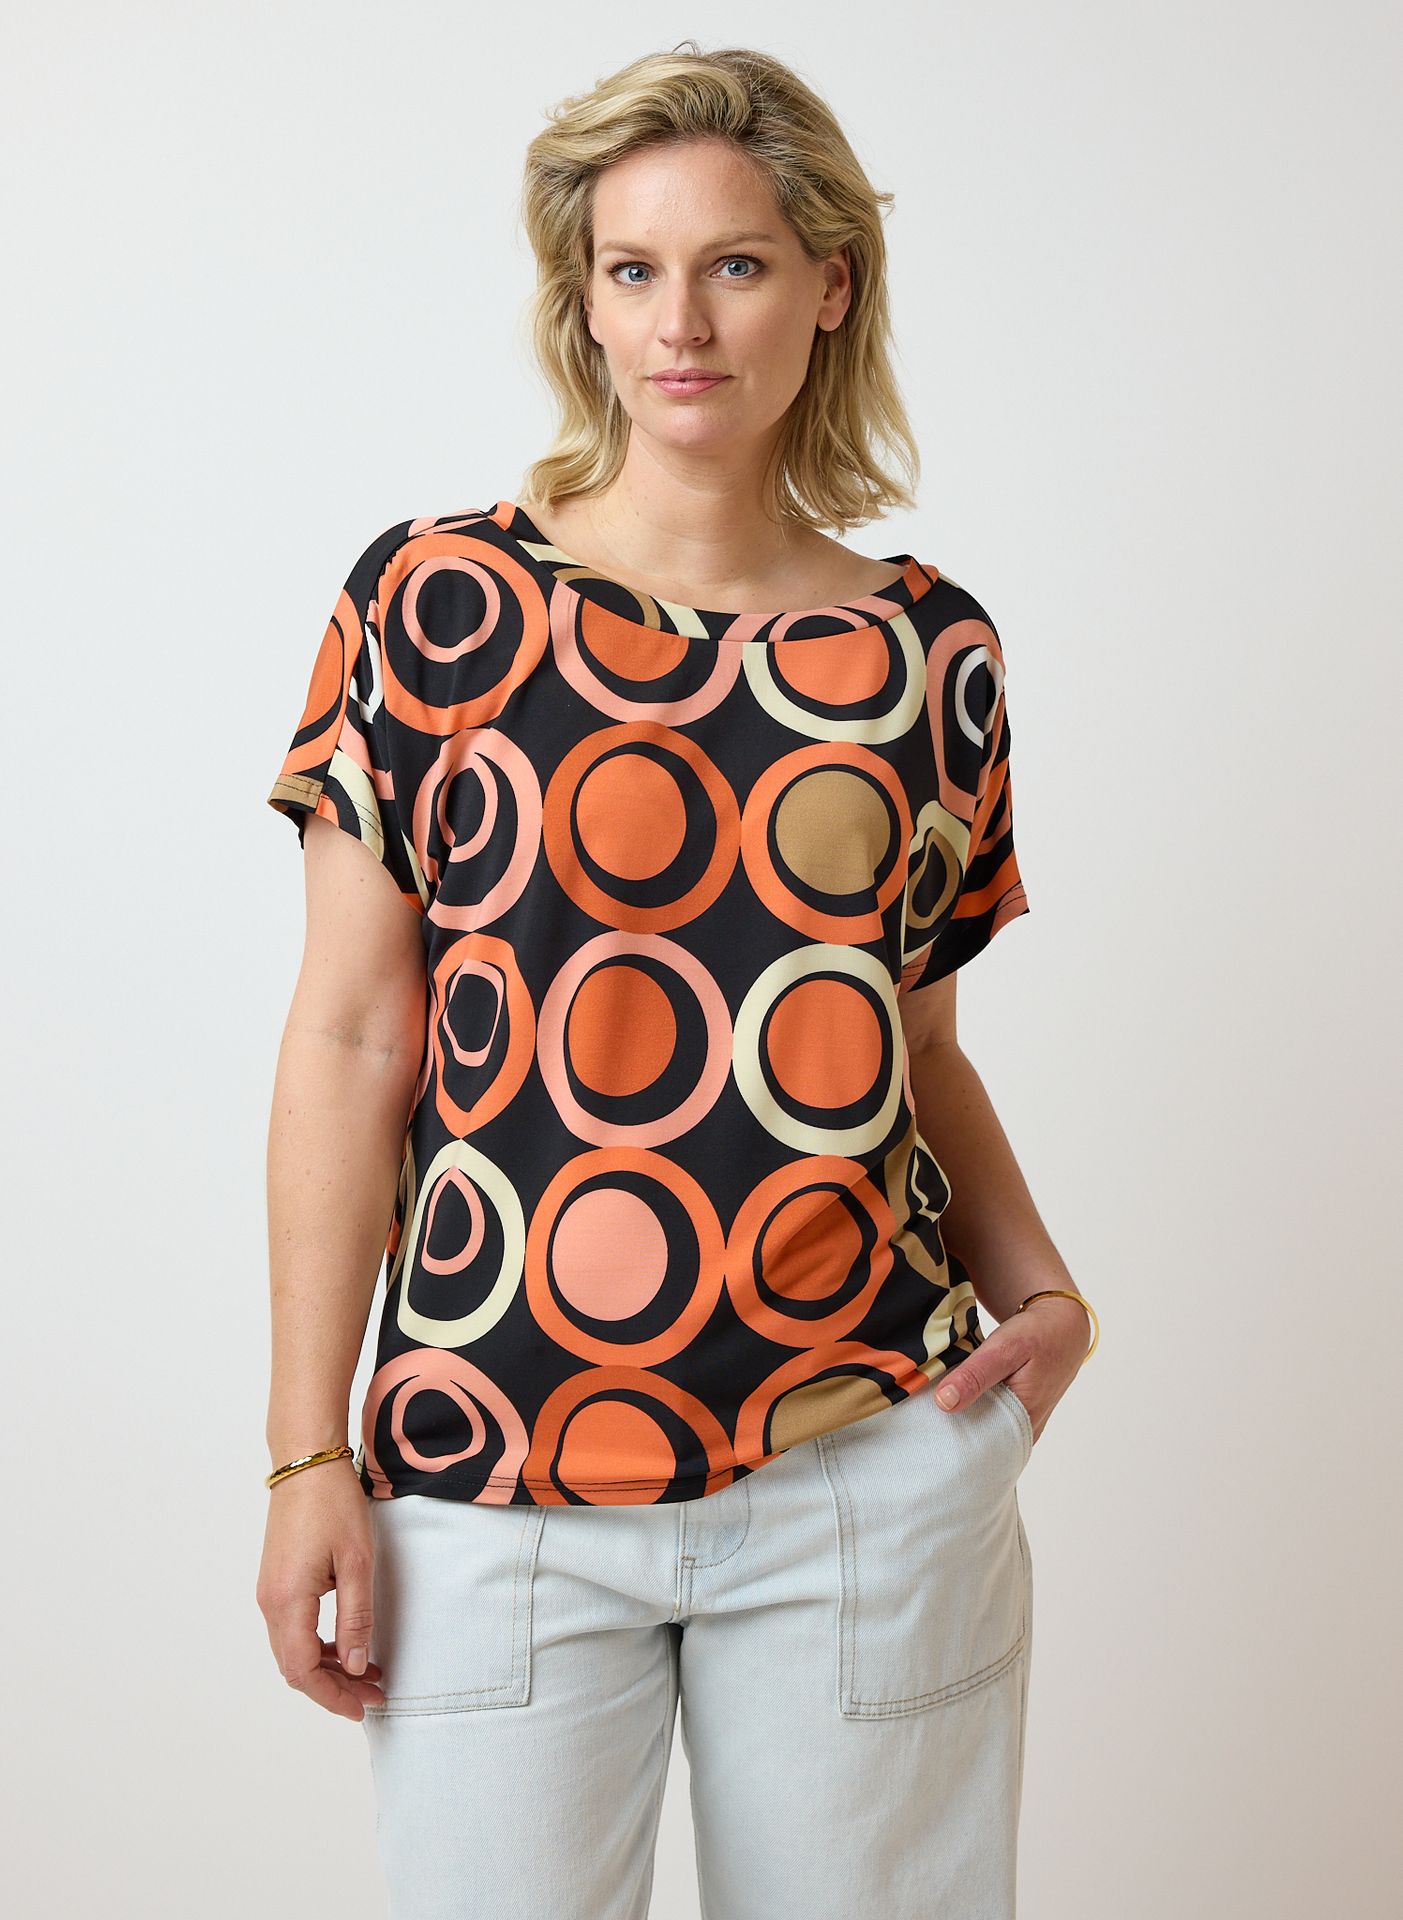 Norah Shirt rondjes black multicolor 213972-020